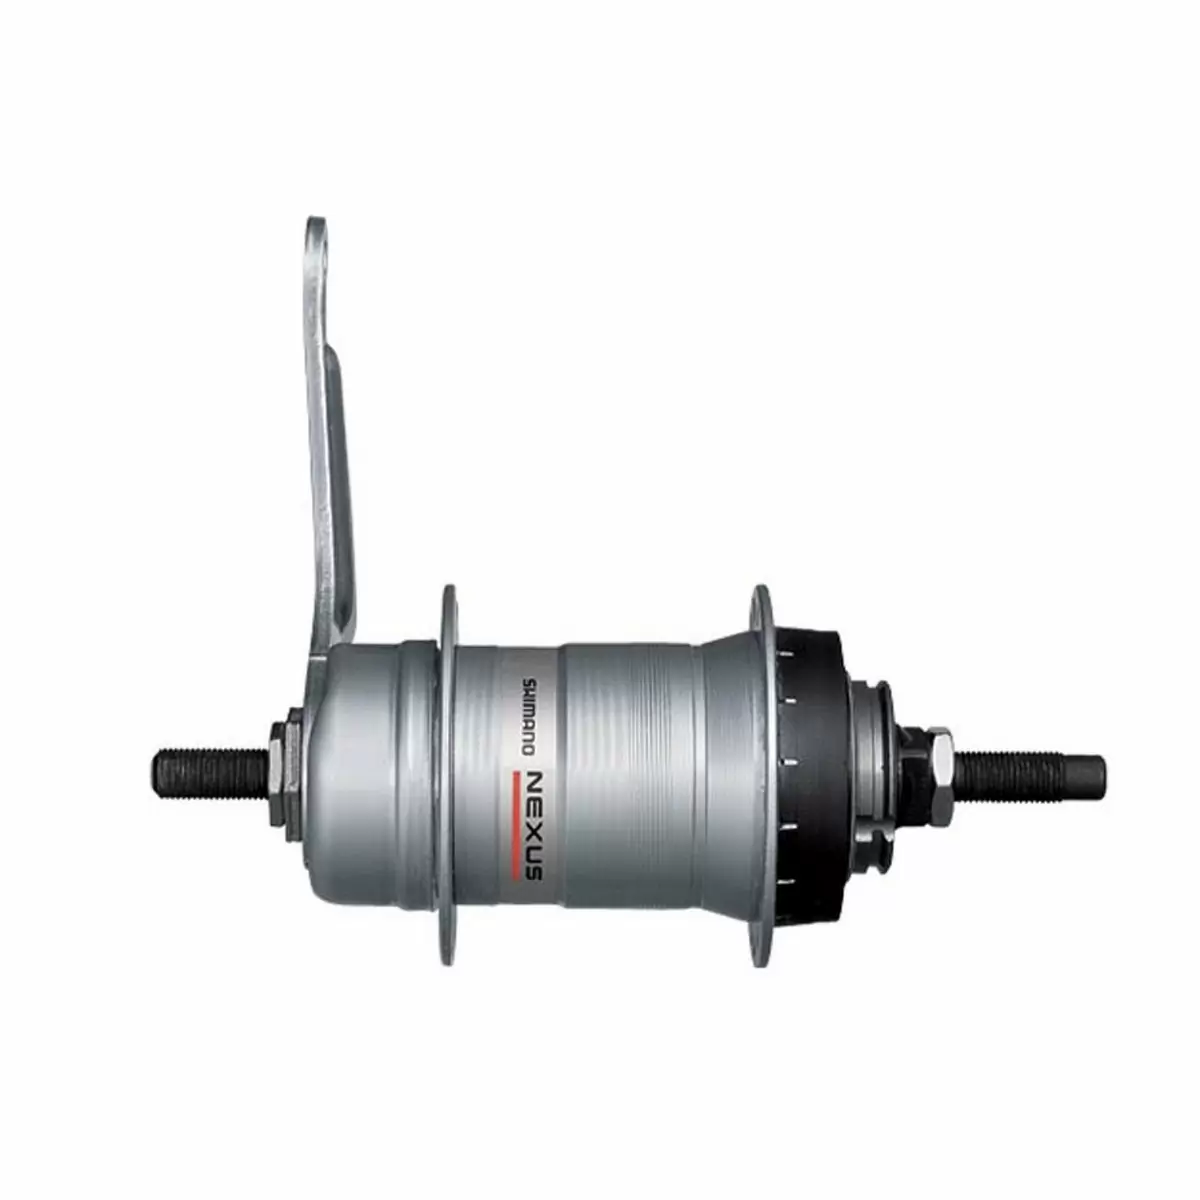 Gear hub Nexus Inter3 coasterbrake SG-3C41 3 speed 127mm / 36h - image